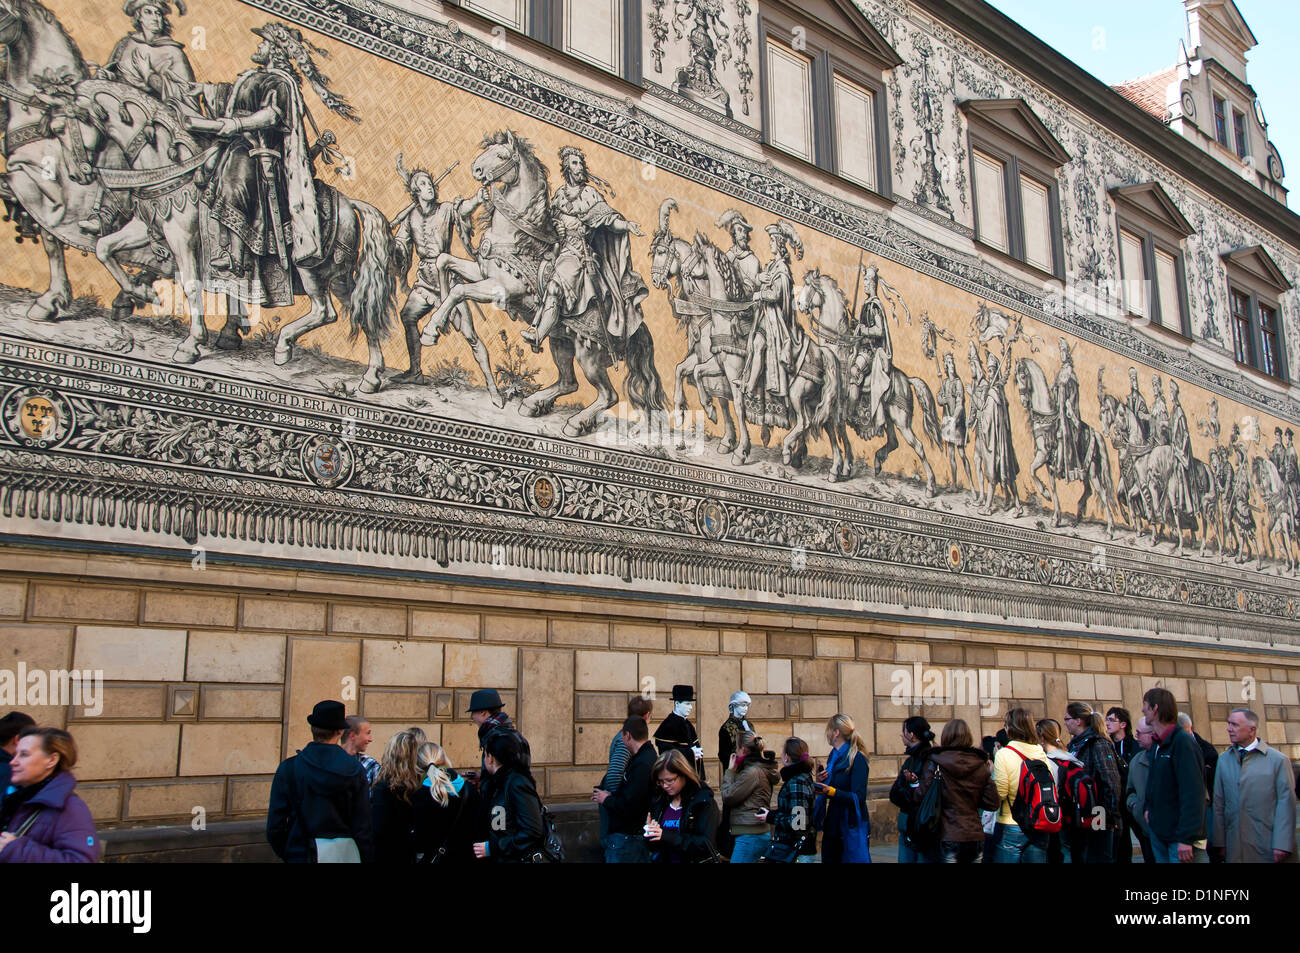 Furstenzug ou la Procession des Princes vue extérieure fresque avec les touristes, Dresden, Allemagne Banque D'Images